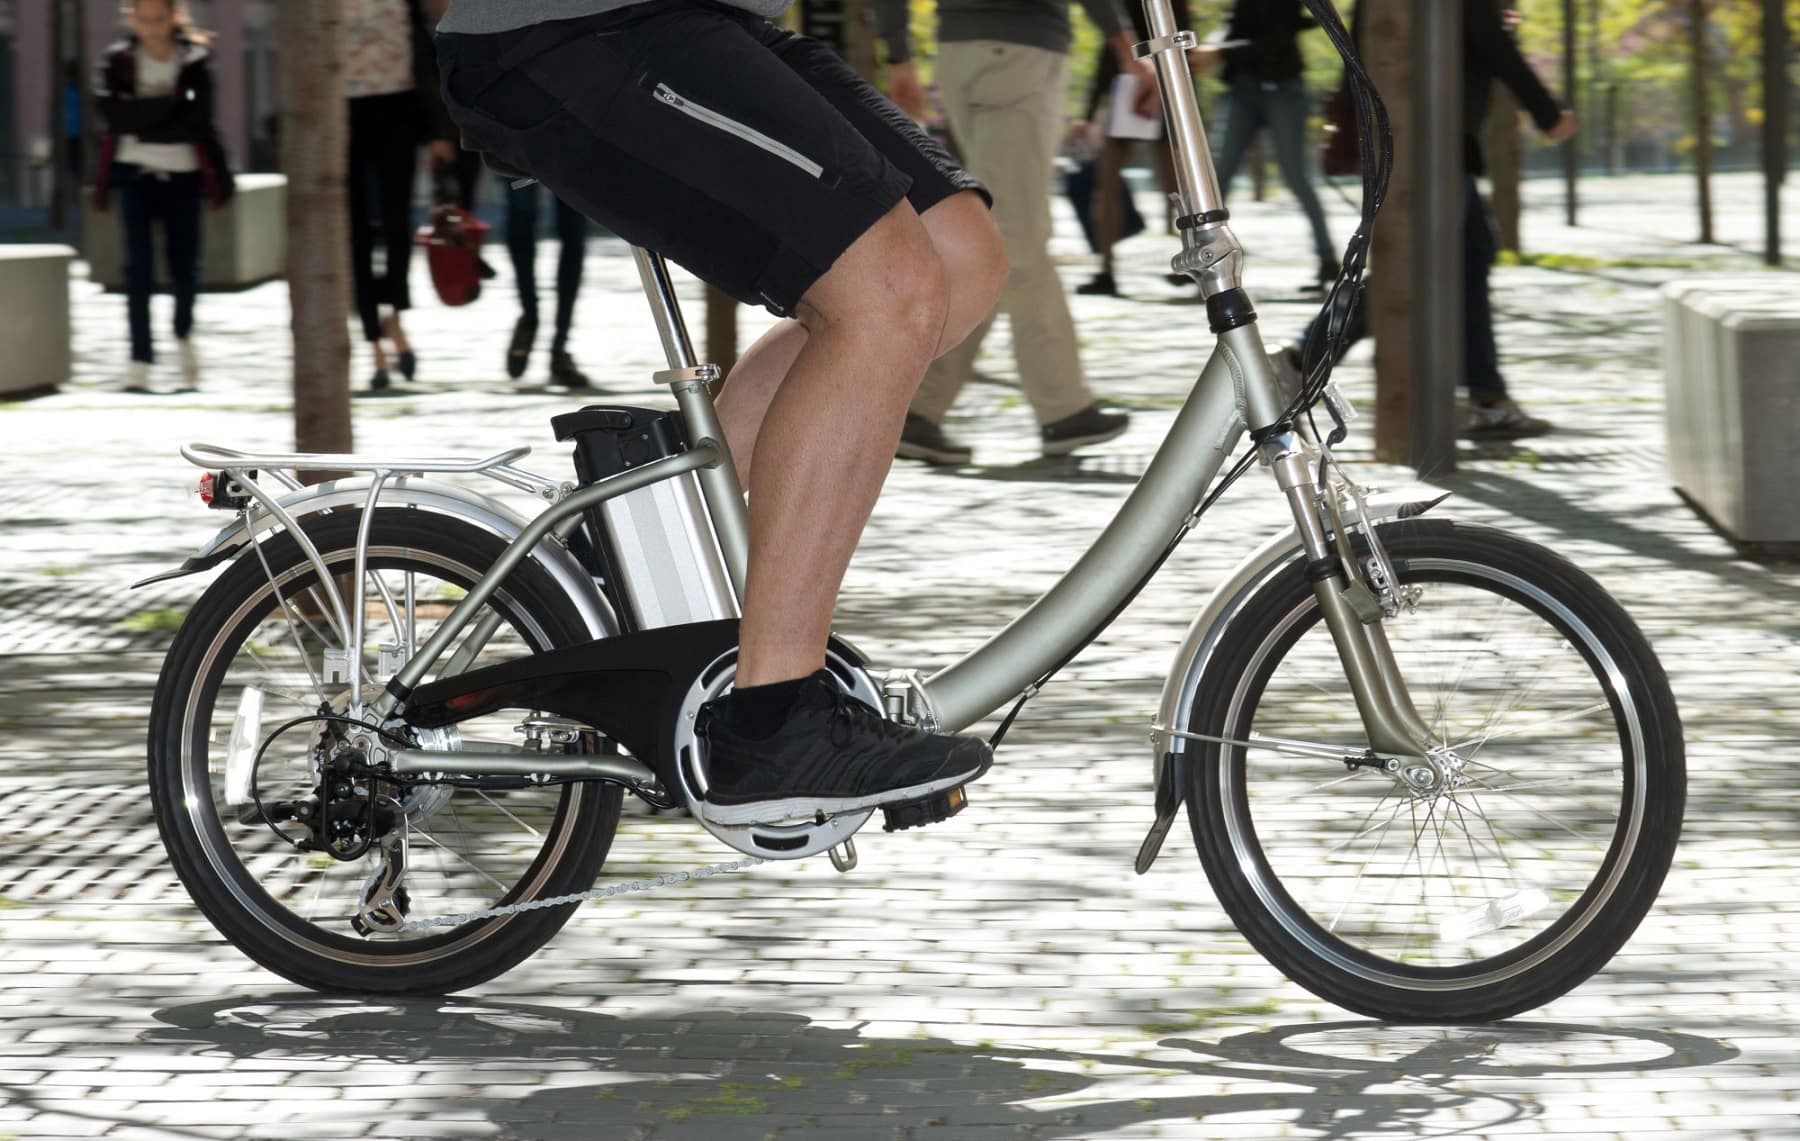 Caminar, andar en bicicleta o utilizar transporte público para reducir la emisión de gases de efecto invernadero